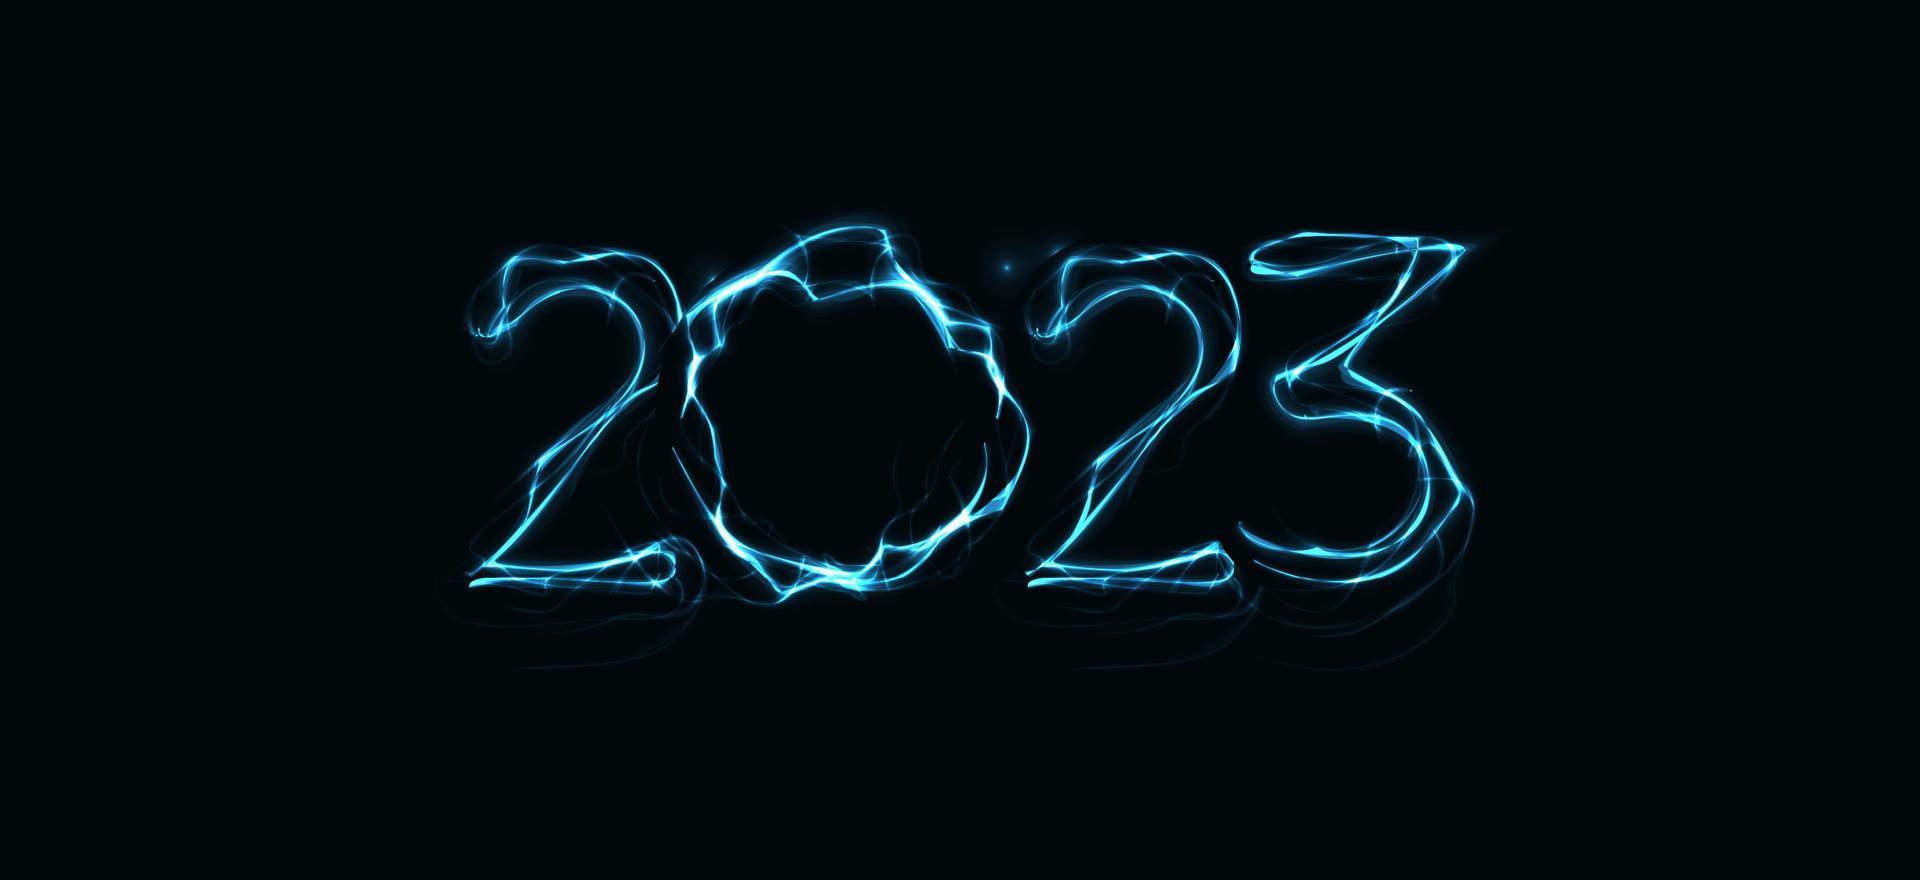 2023 tal med magi lysande blixt- kontur. Lycklig ny år händelse affisch, hälsning kort omslag, 2023 kalender design, inbjudan till fira ny år och jul. vektor illustration.